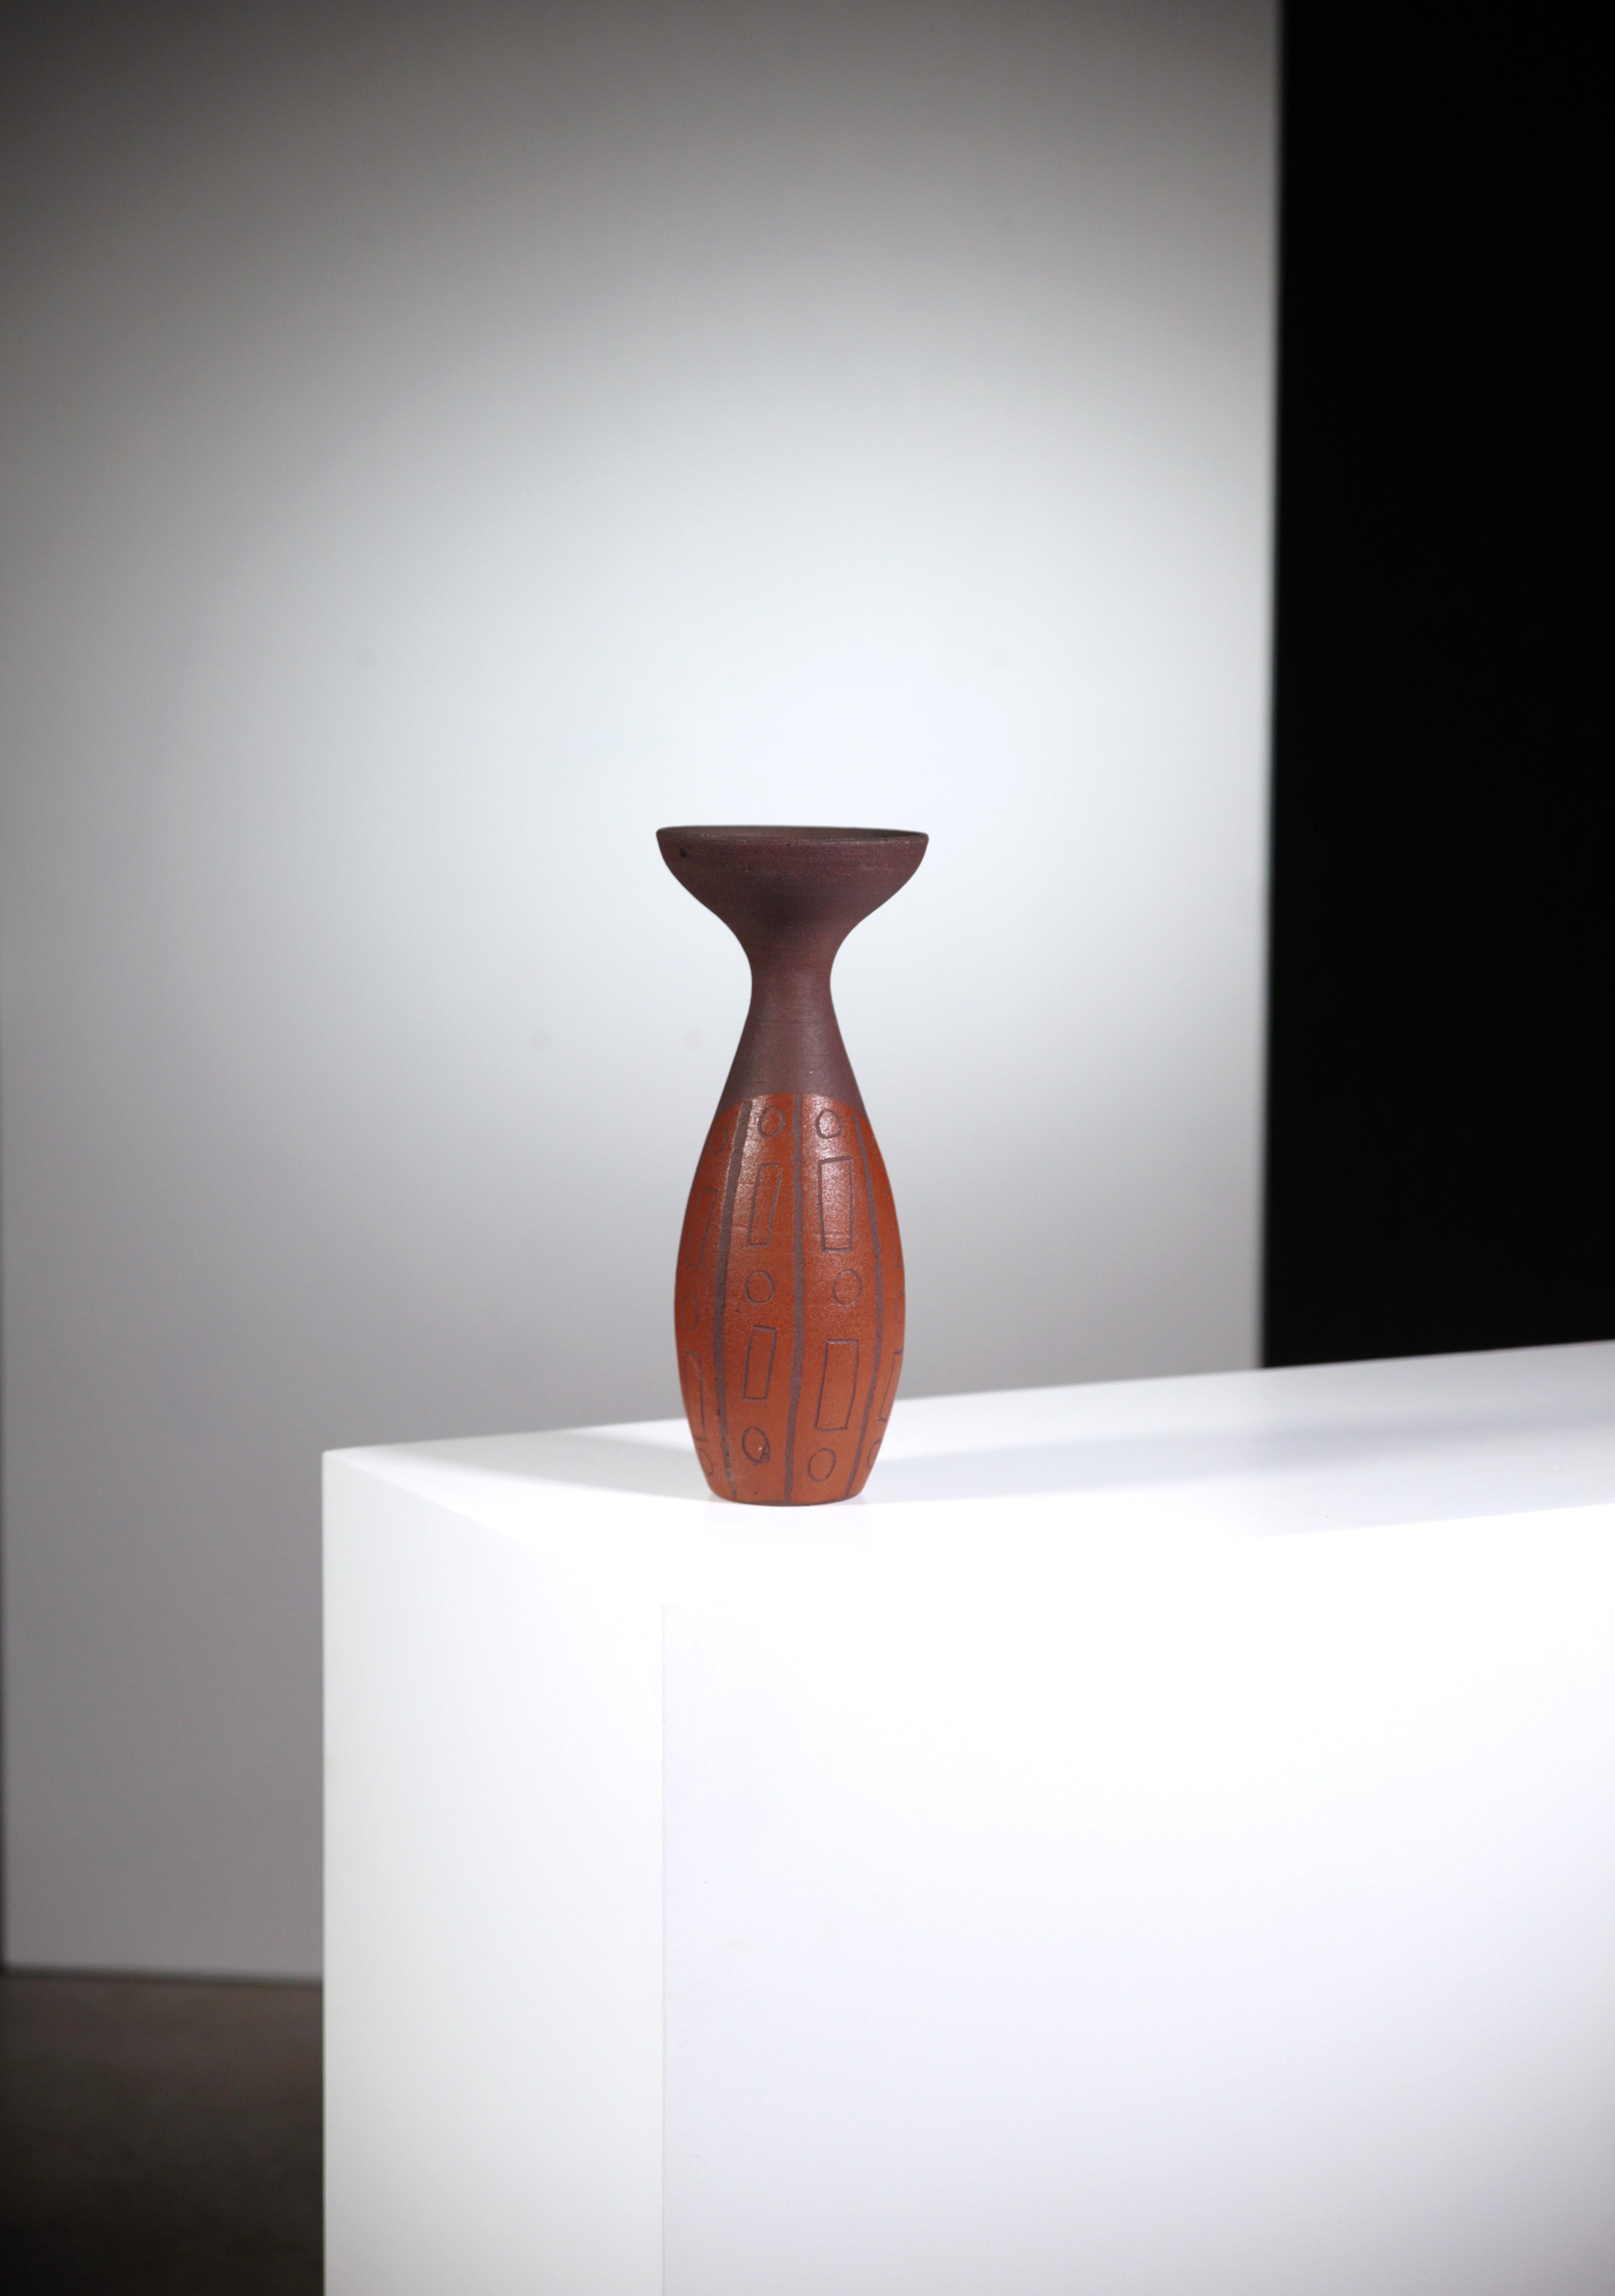 Un vase africaniste d'Accolay Pottery.

Modèle rare.

Signé sous.